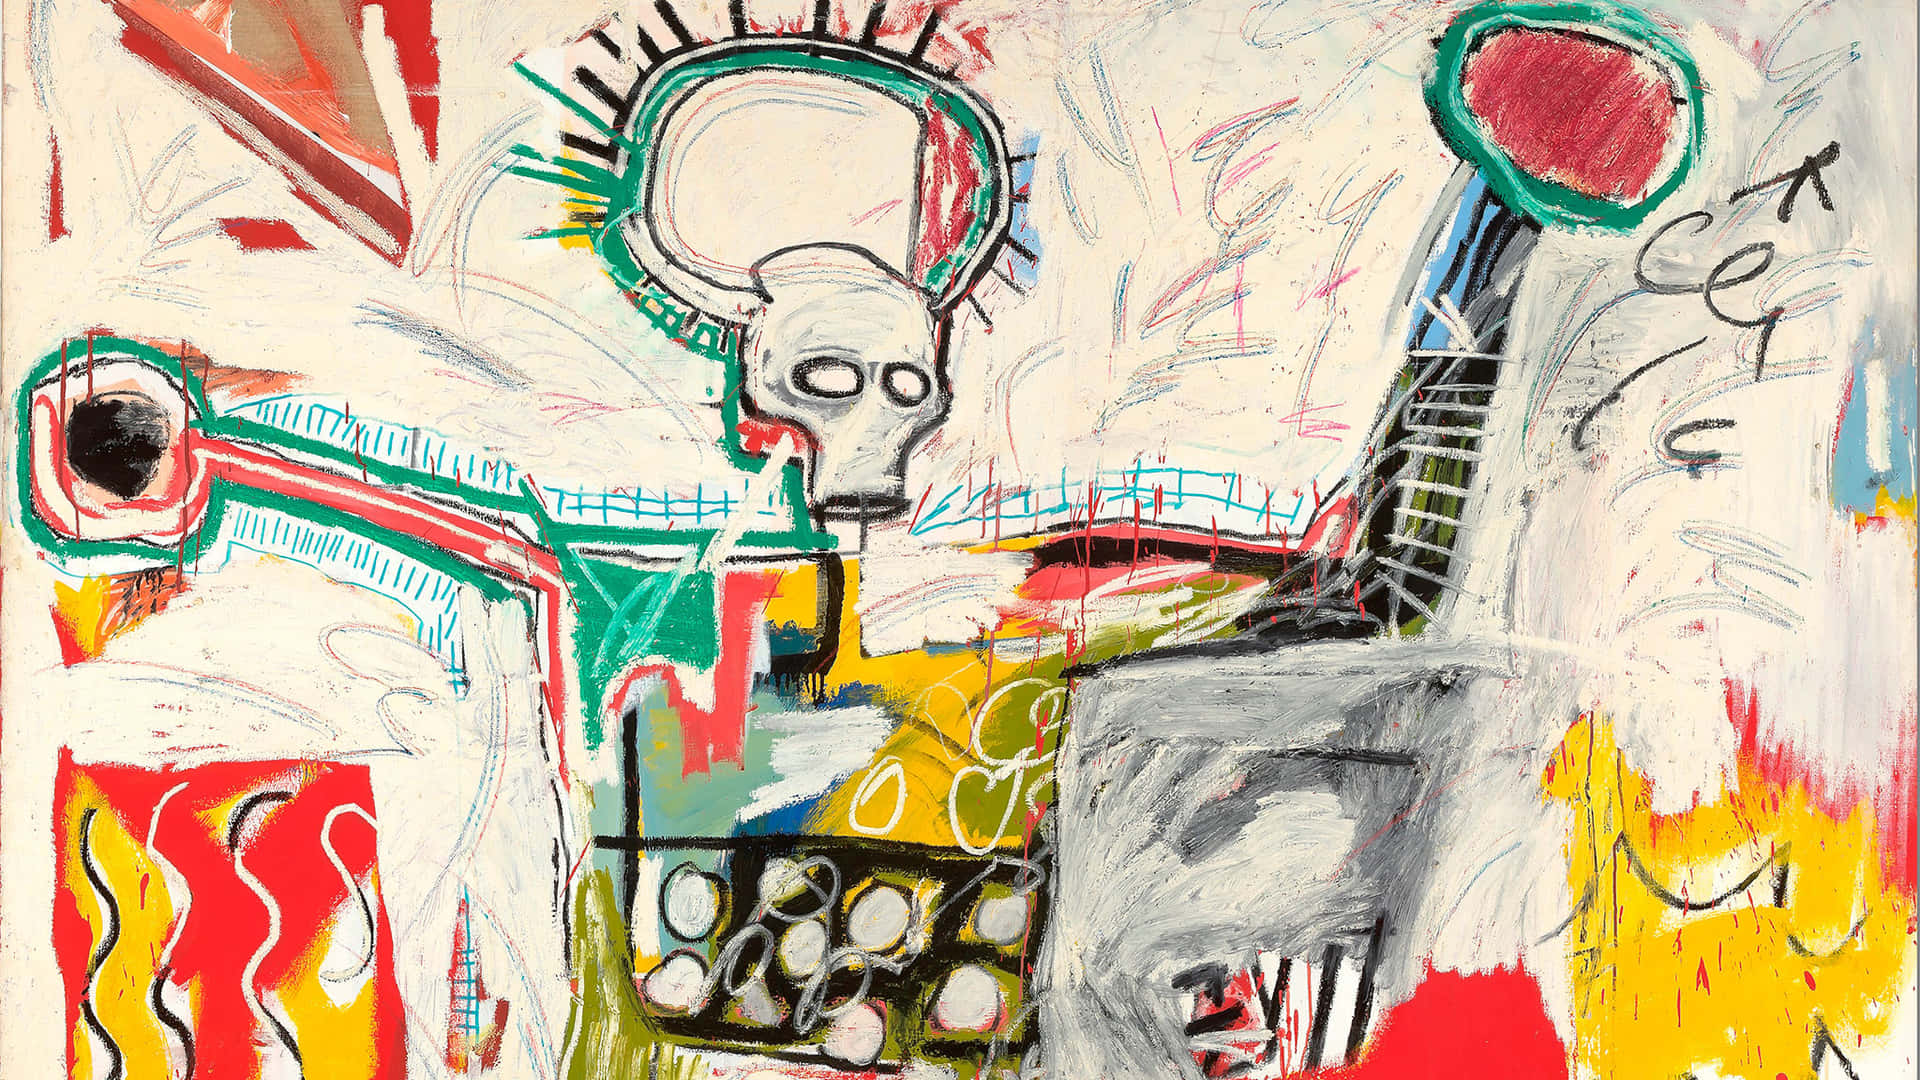 Endigital Återskapning Av Ikoniska Porträttet Av Jean-michel Basquiat. Wallpaper